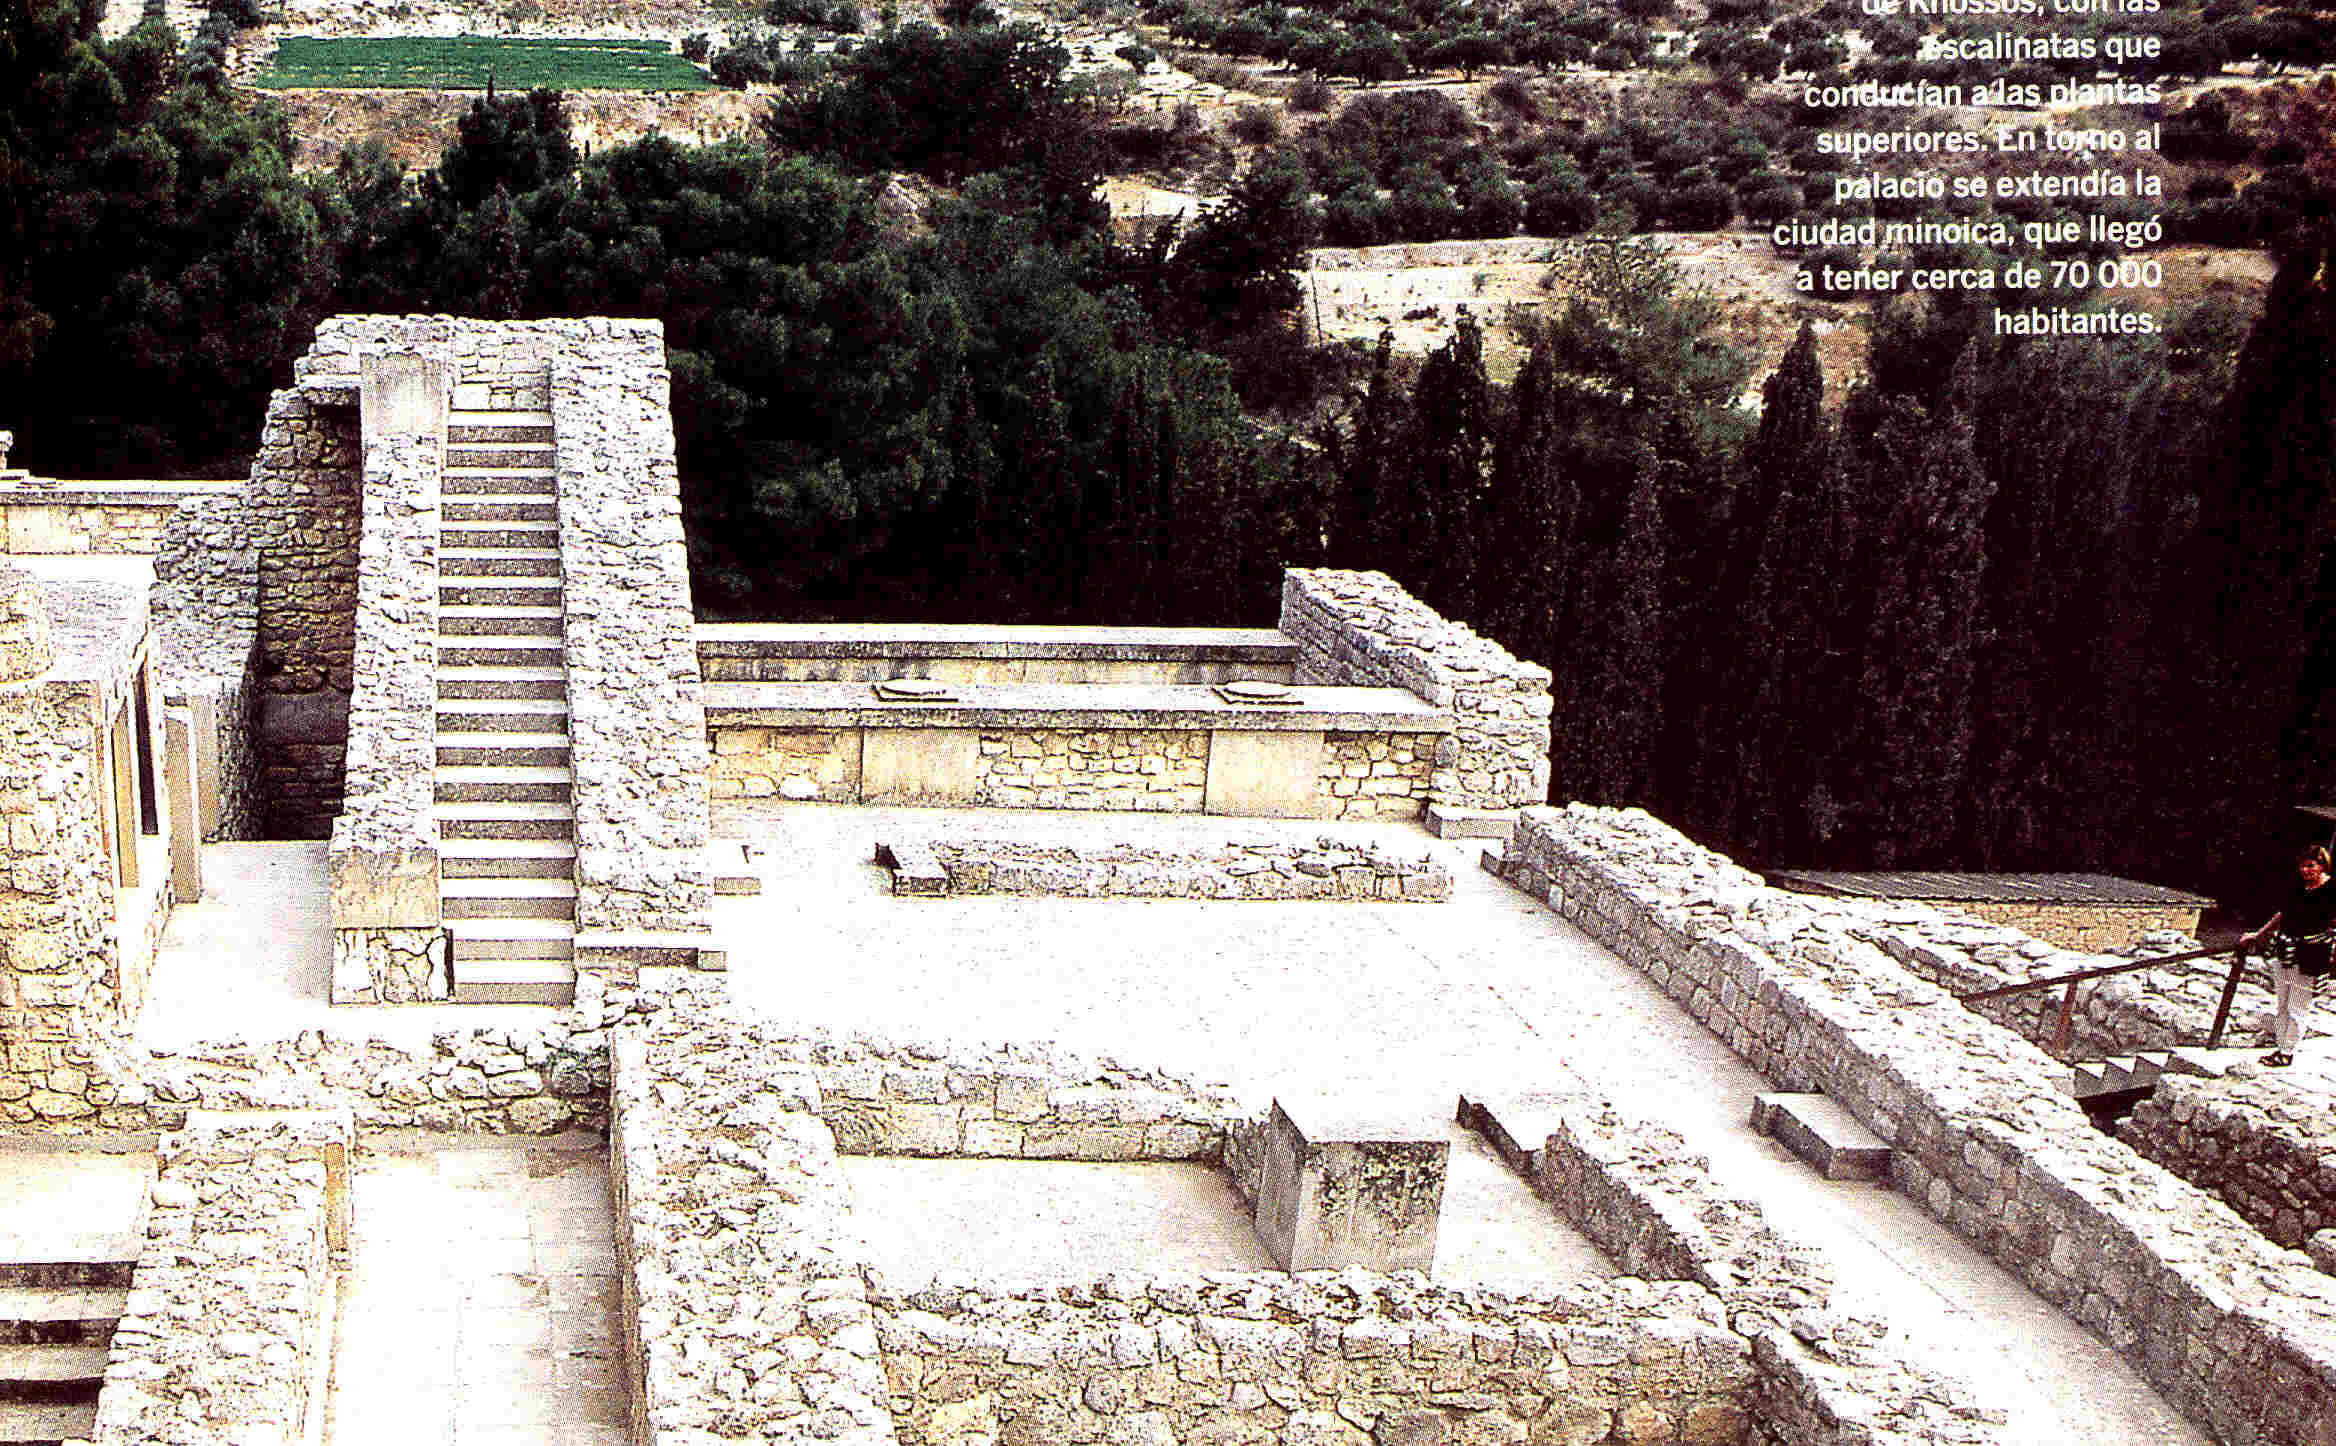 El Palacio de Cnossos La civilización minoica Grecia clásica 4